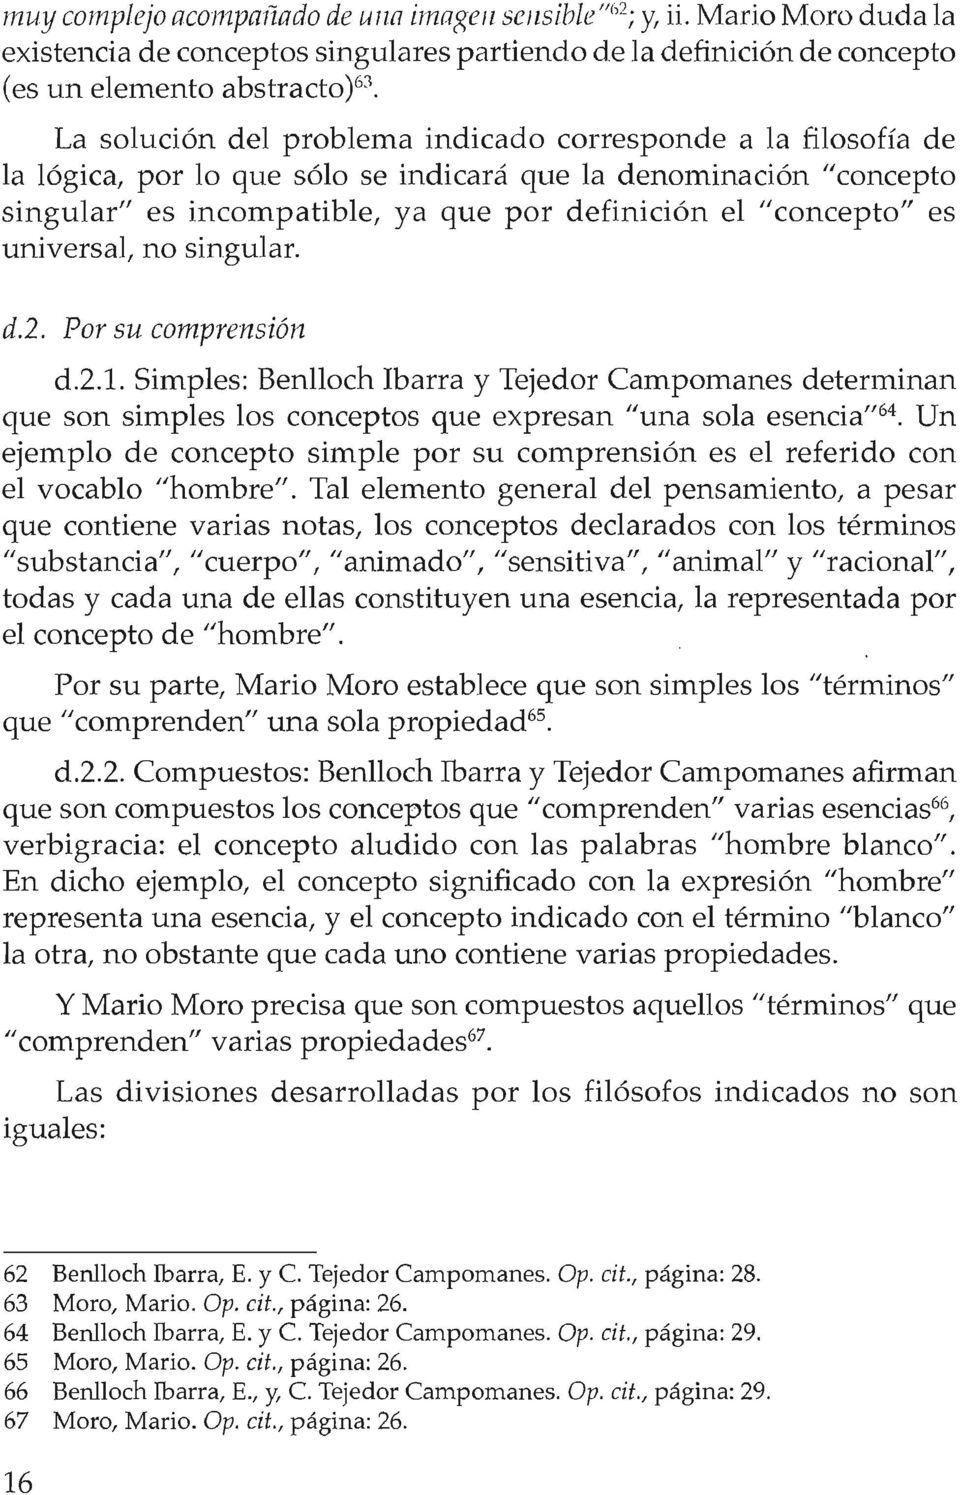 universal, no singular. d.2. Por su comprensión d.2.1. Simples: Benlloch Ibarra y Tejedor Campomanes detenninan que son simples los conceptos que expresan "una sola esencia"64.